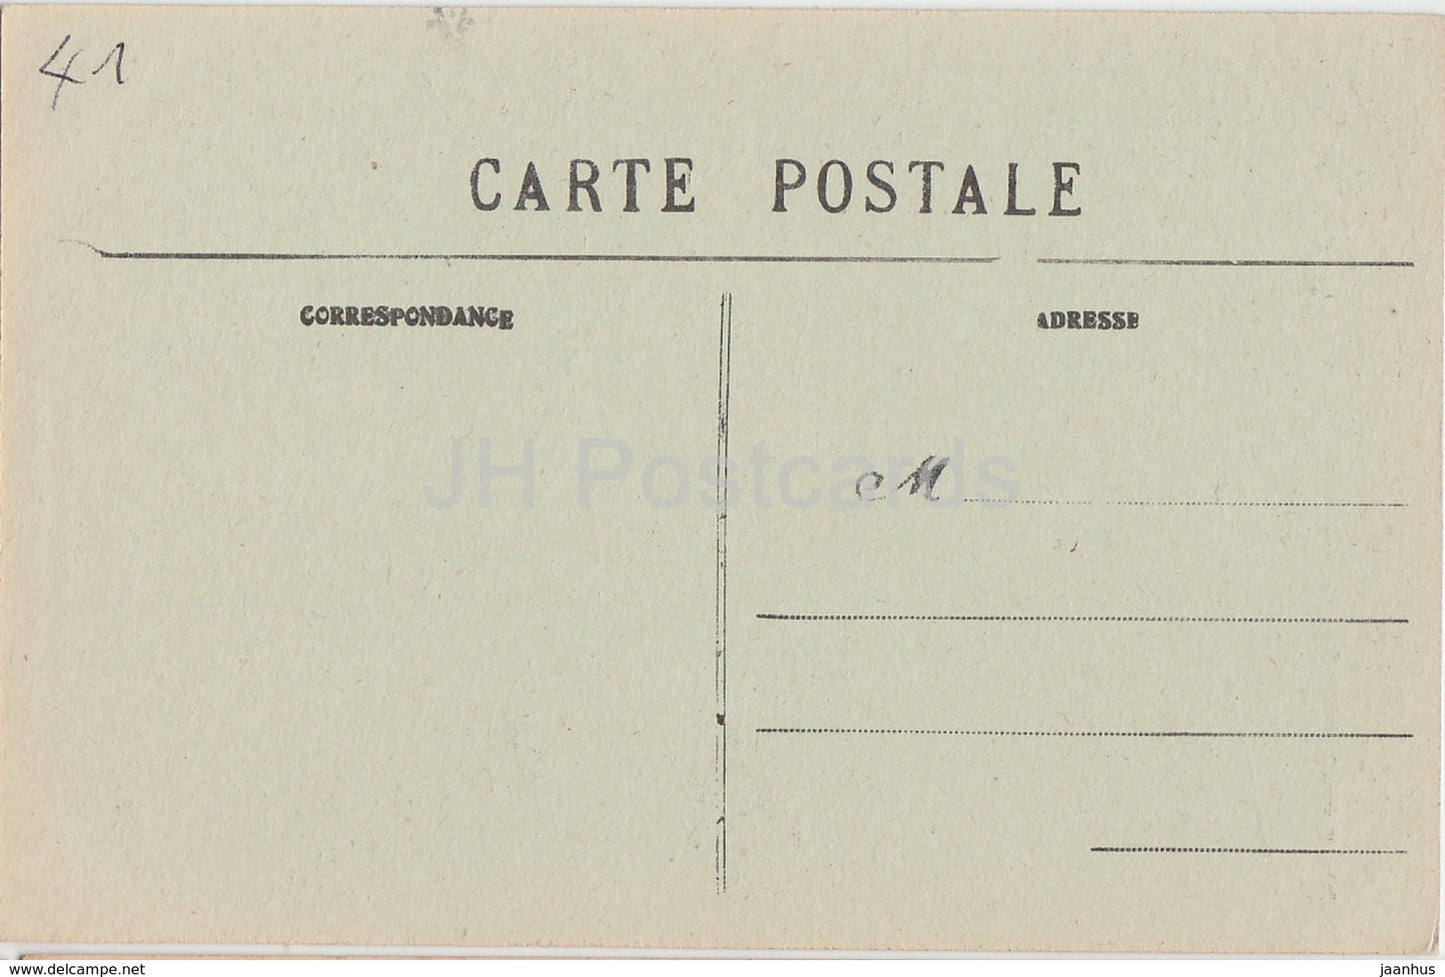 Lavardin - Pres Montoire - Restes de la Voute du Donjon - ruines du château - 6 - carte postale ancienne - France - inutilisée